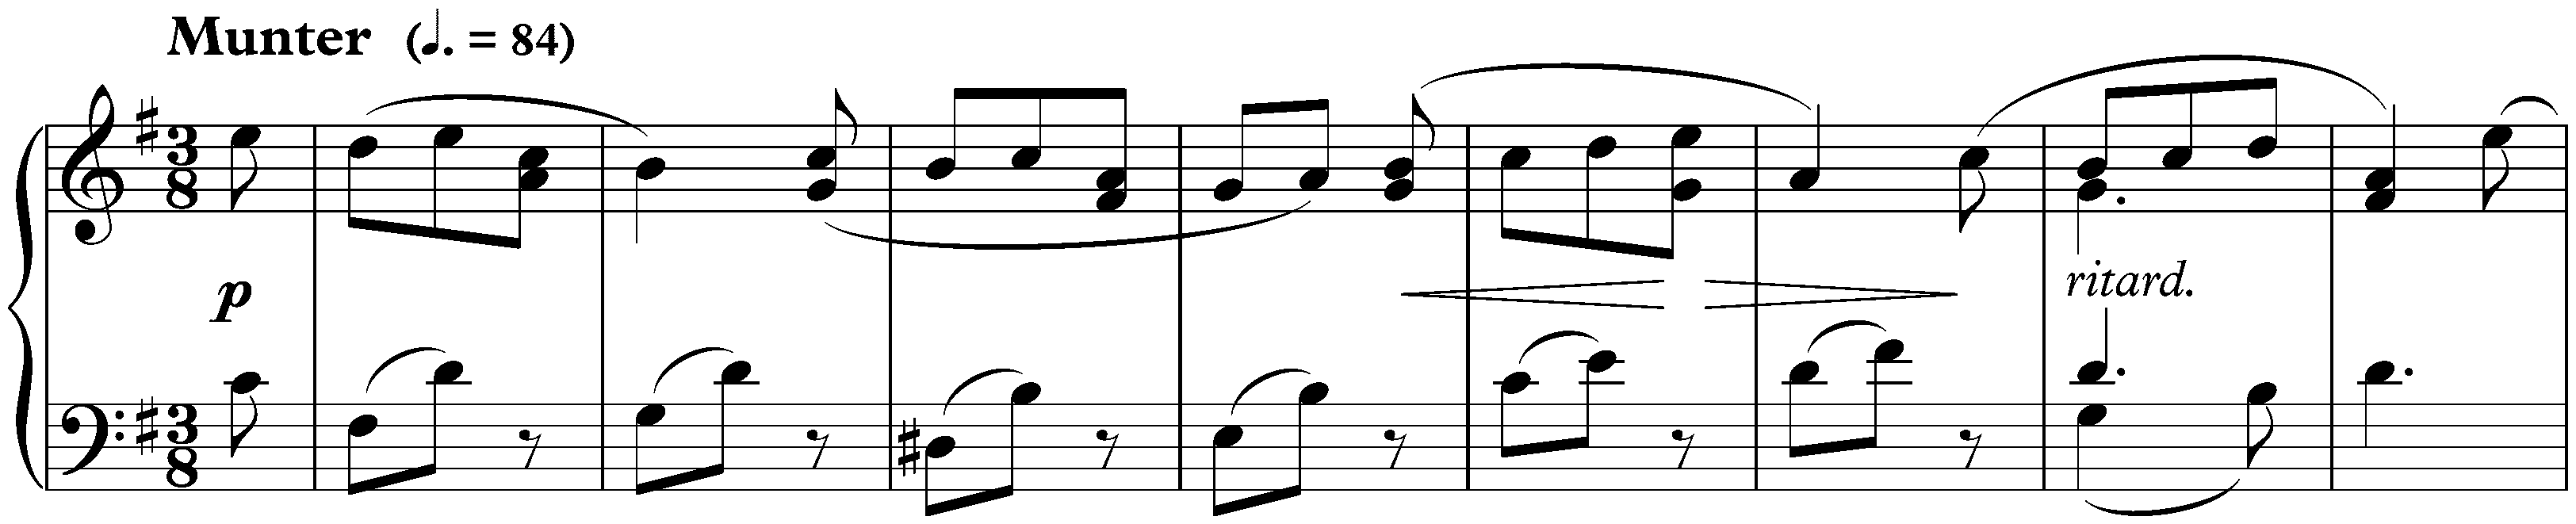 Sonate für die Jugend in G major, op. 118 no. 1; 4. Rondoletto: Munter